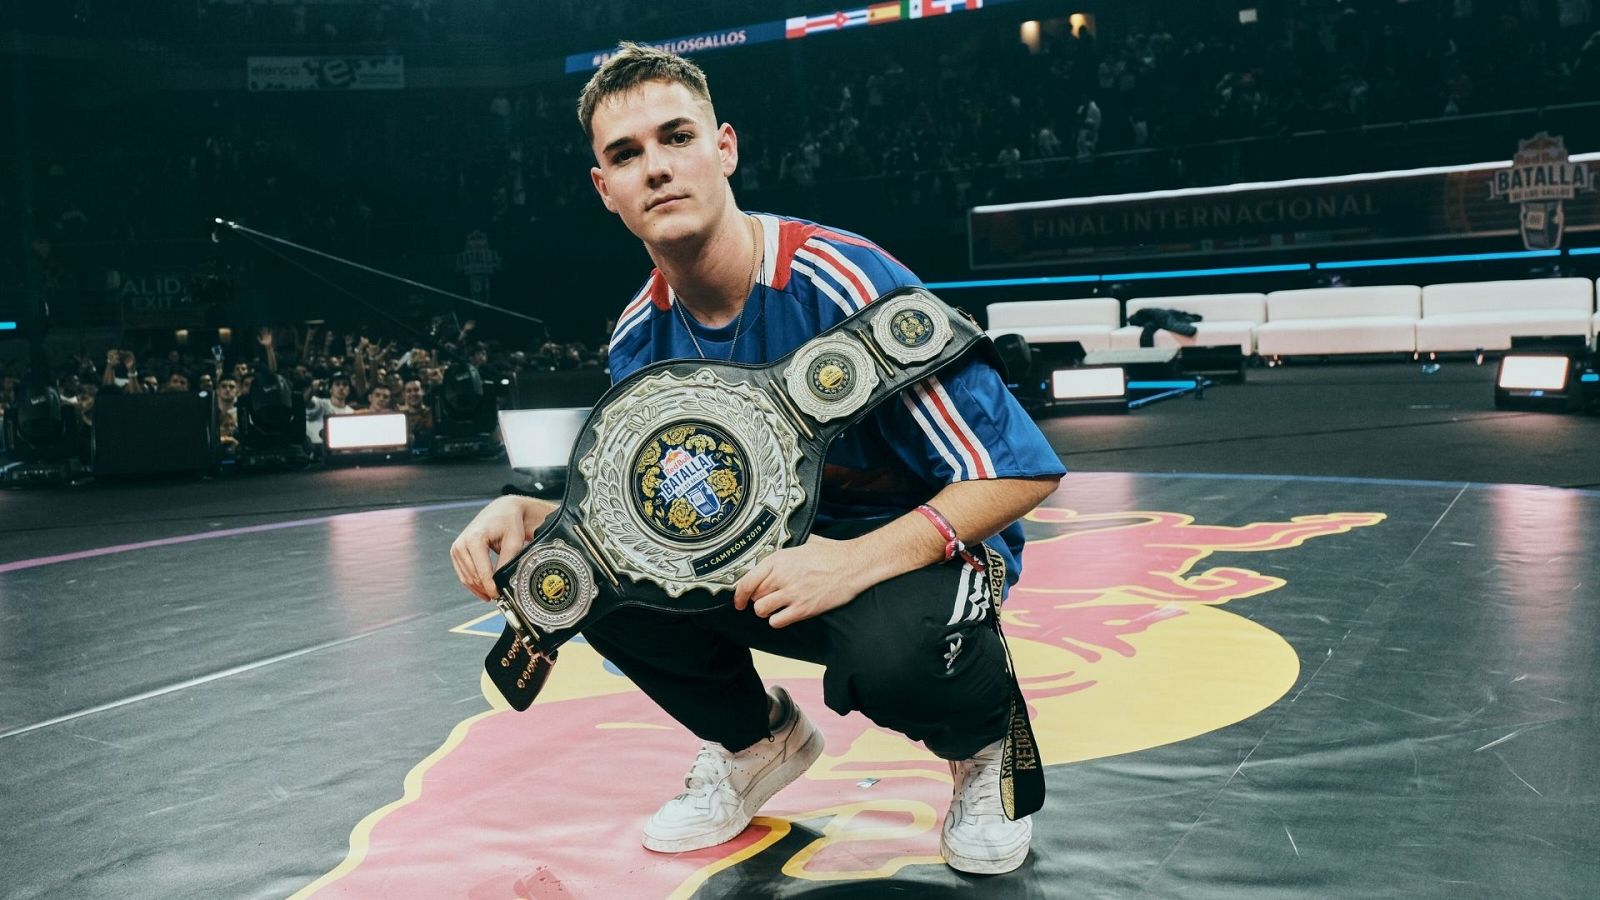 Bnet, campeón internacional de Red Bull Batalla de los Gallos 2019